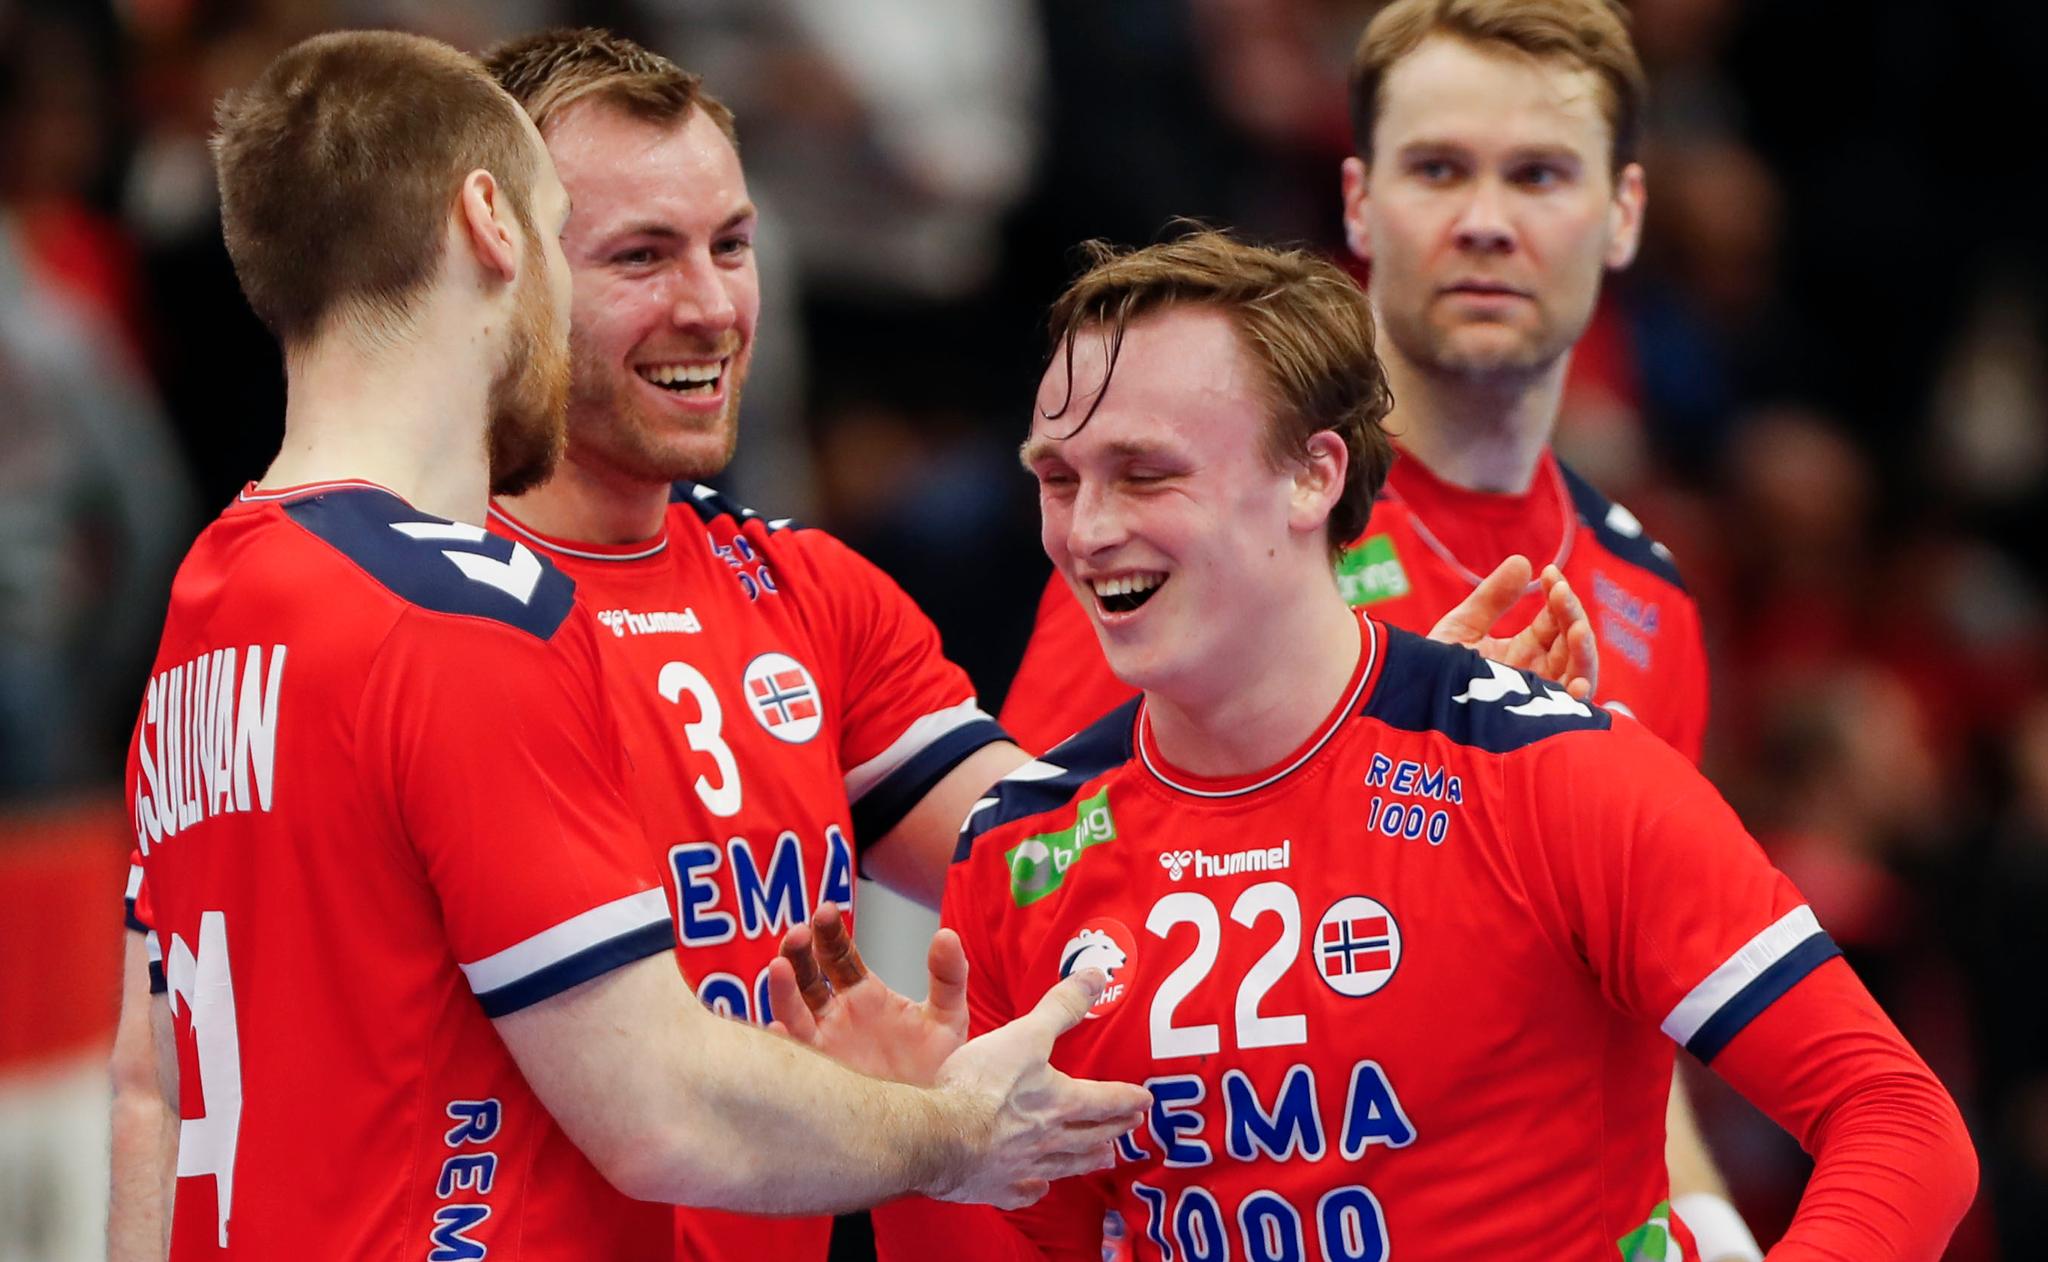  Tobias Grøndahl får spille VM i hjemkommunen Bærum i januar neste år. Her sammen med Christian O’Sullivan (til venstre), Vetle Eck Aga og Petter Øverby.